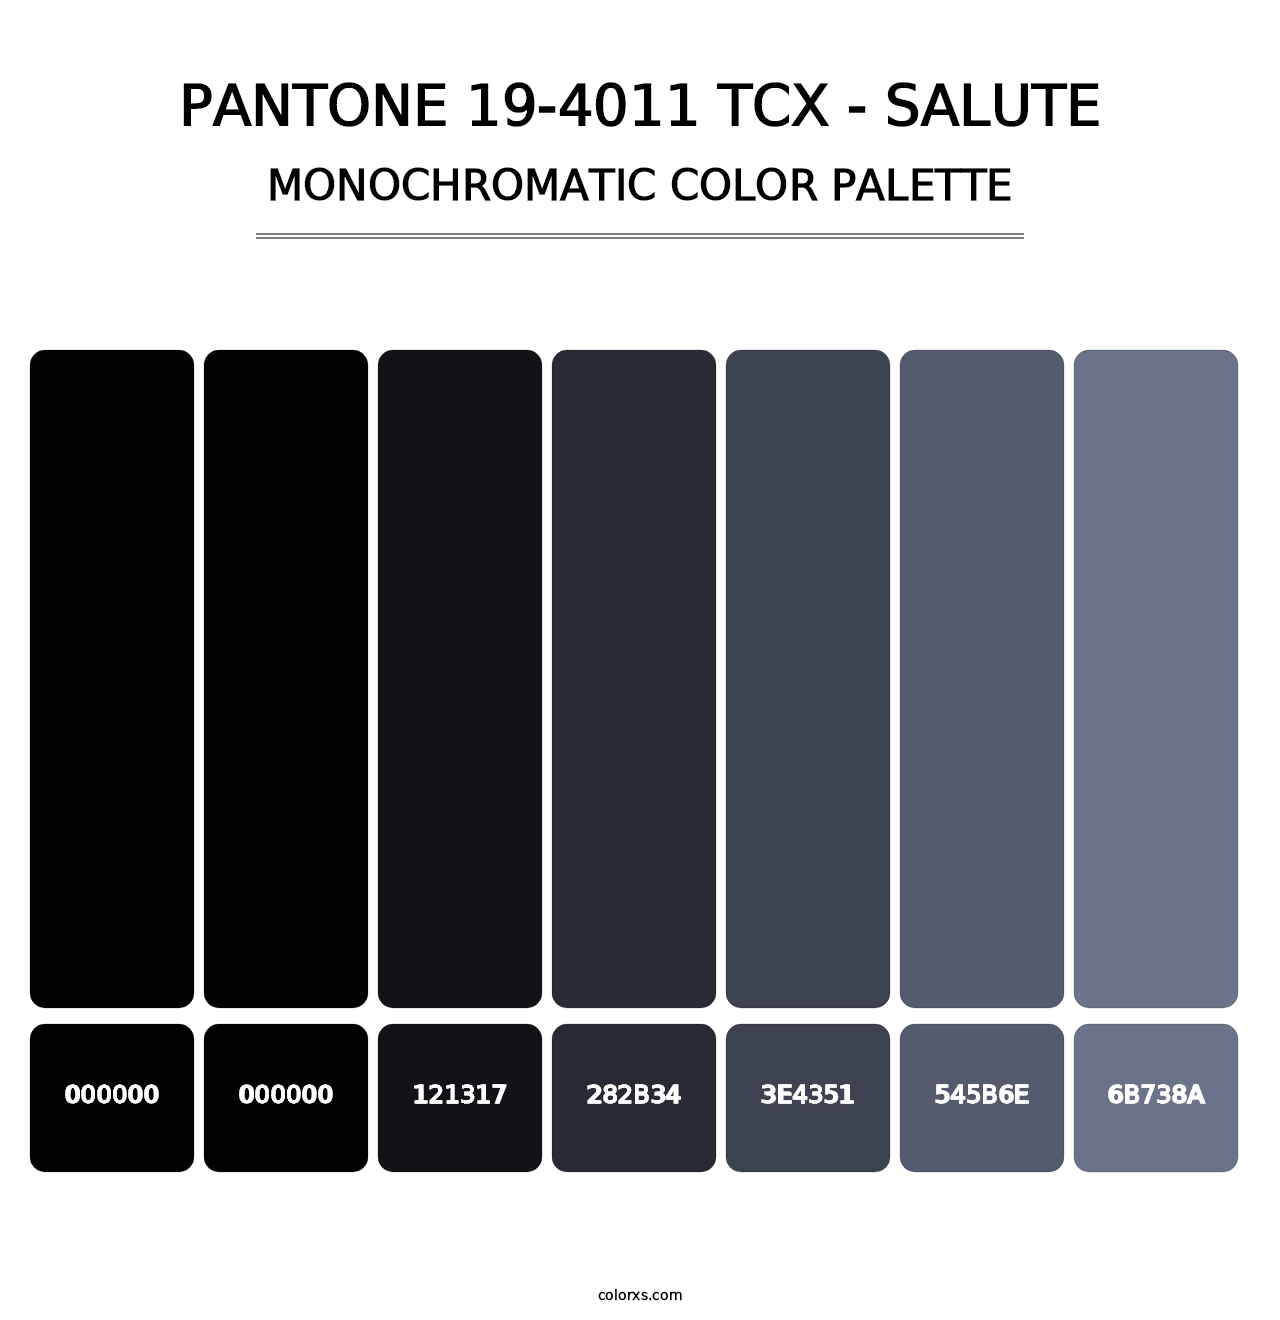 PANTONE 19-4011 TCX - Salute - Monochromatic Color Palette